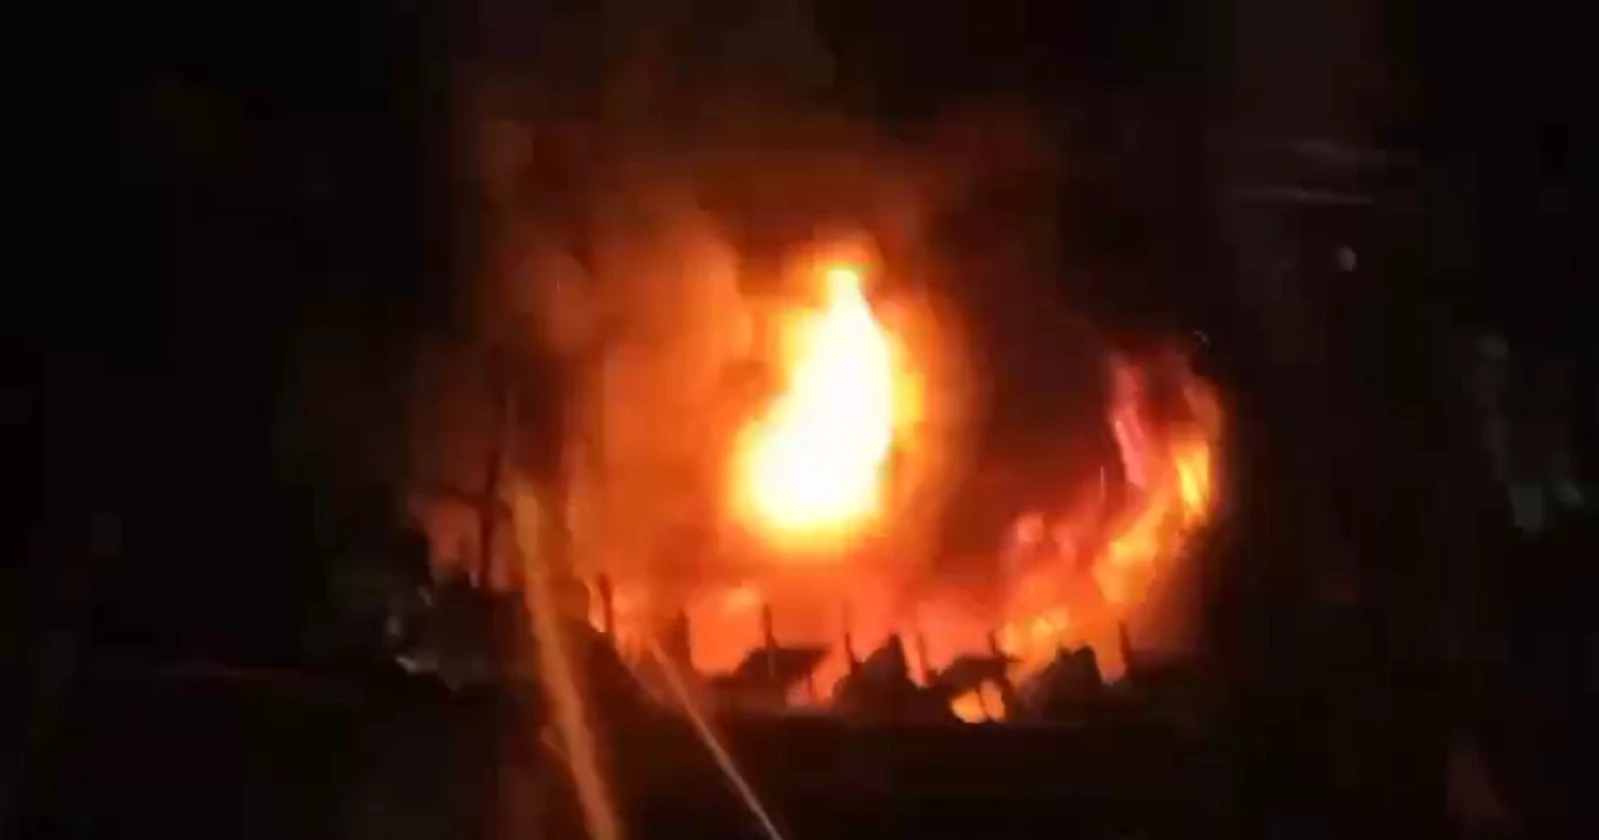 43 dead in Bailey Road building  fire